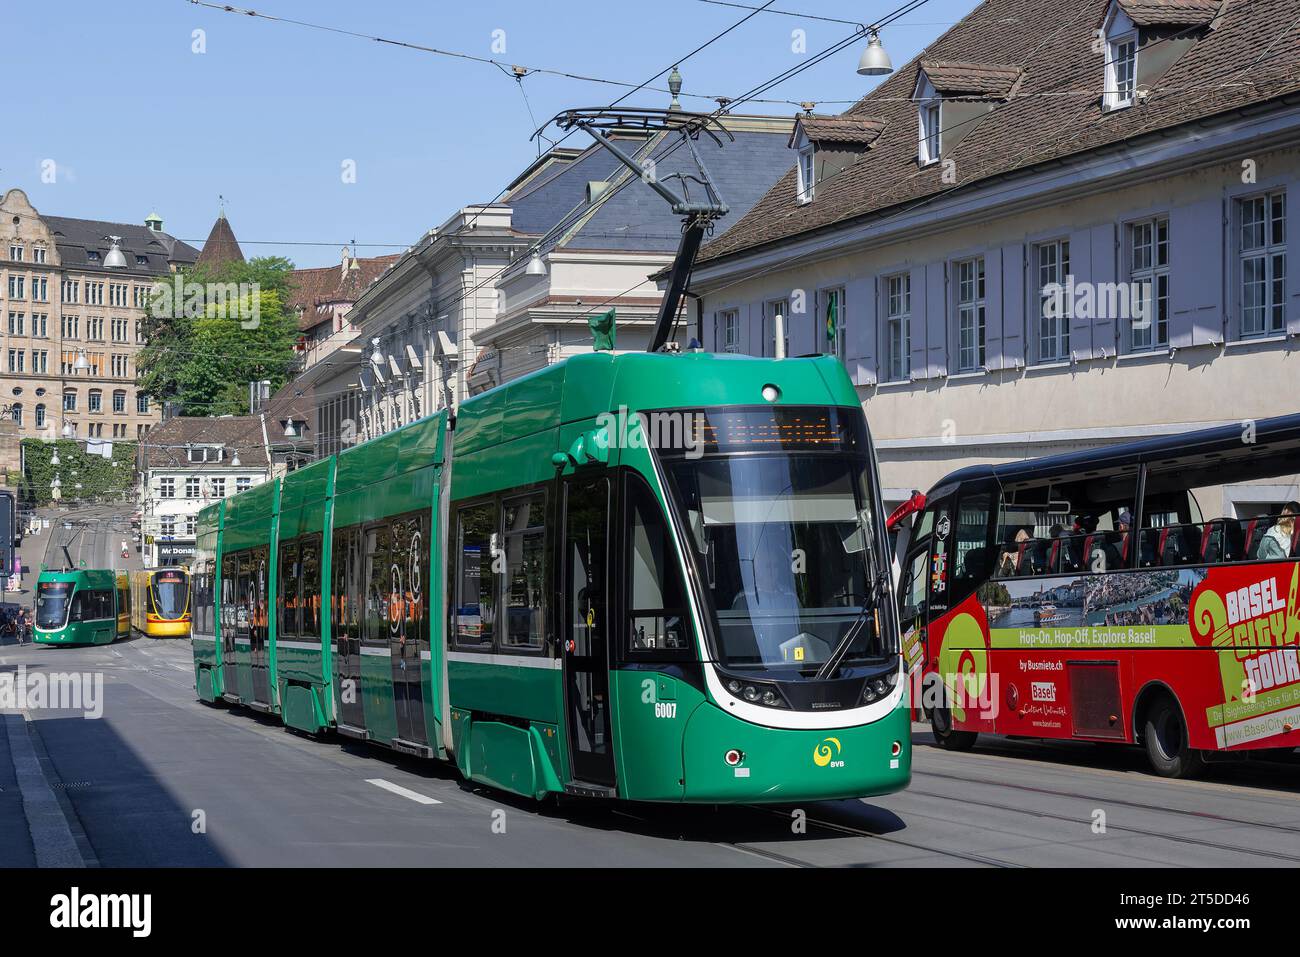 Basel, Switzerland - Green tram Bombardier Flexity 2 in a street. Stock Photo